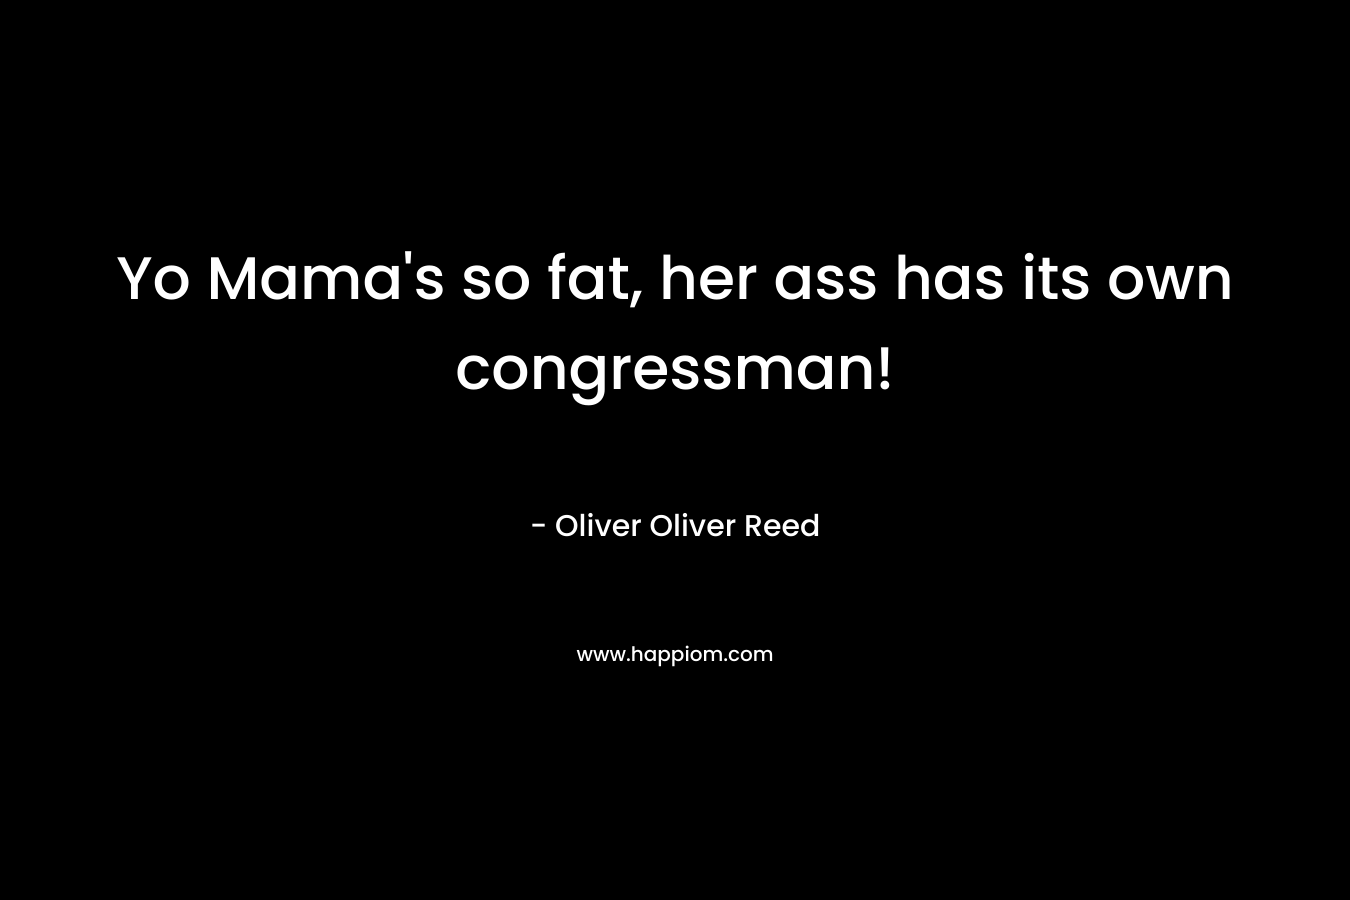 Yo Mama's so fat, her ass has its own congressman!